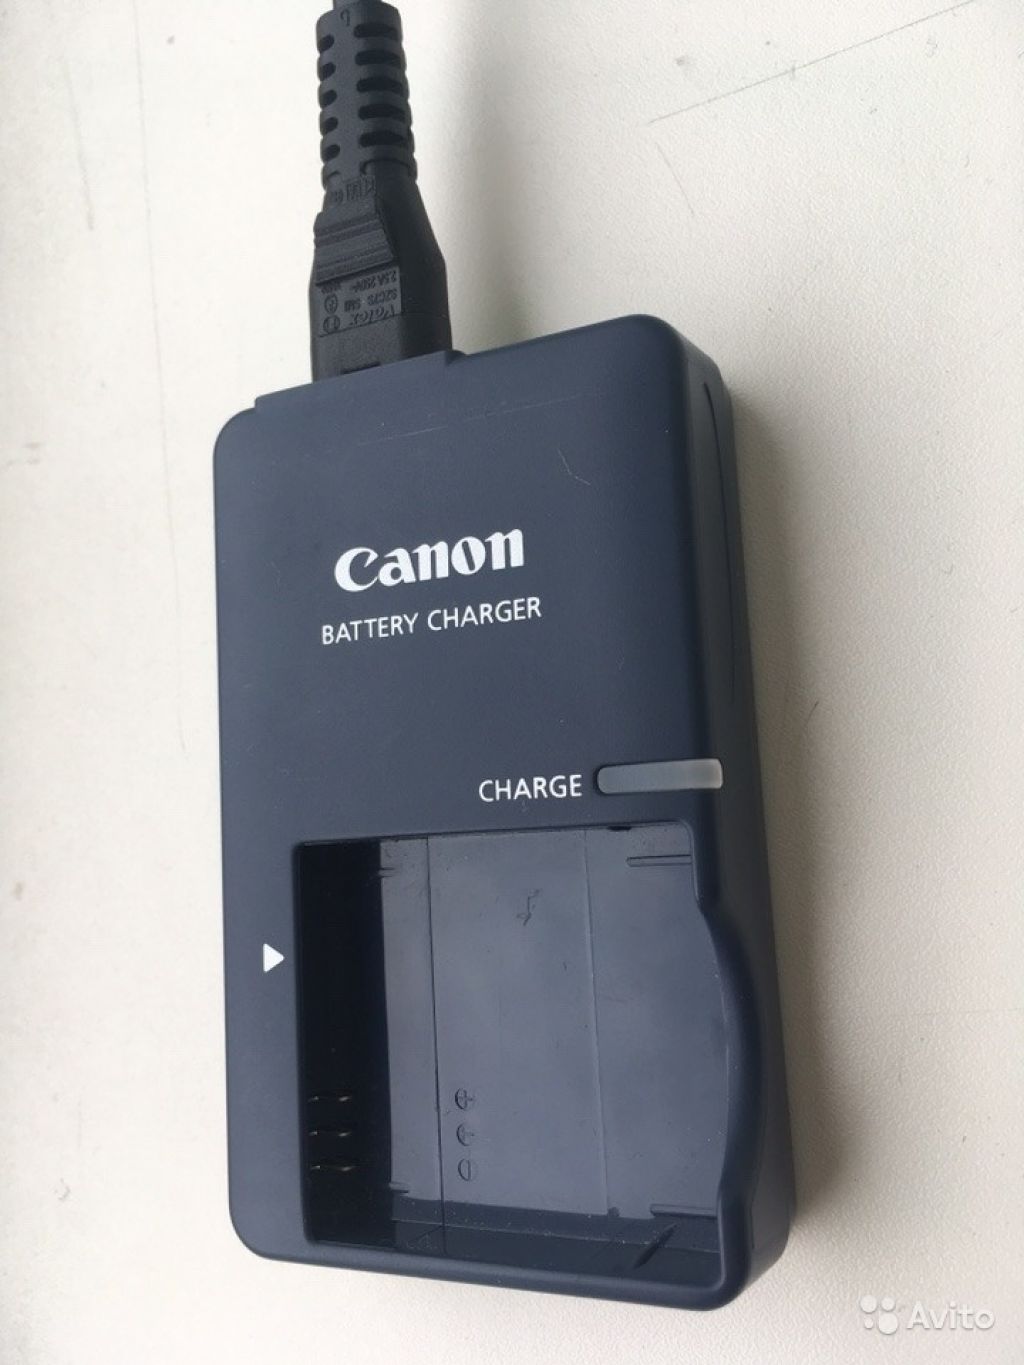 Canon device